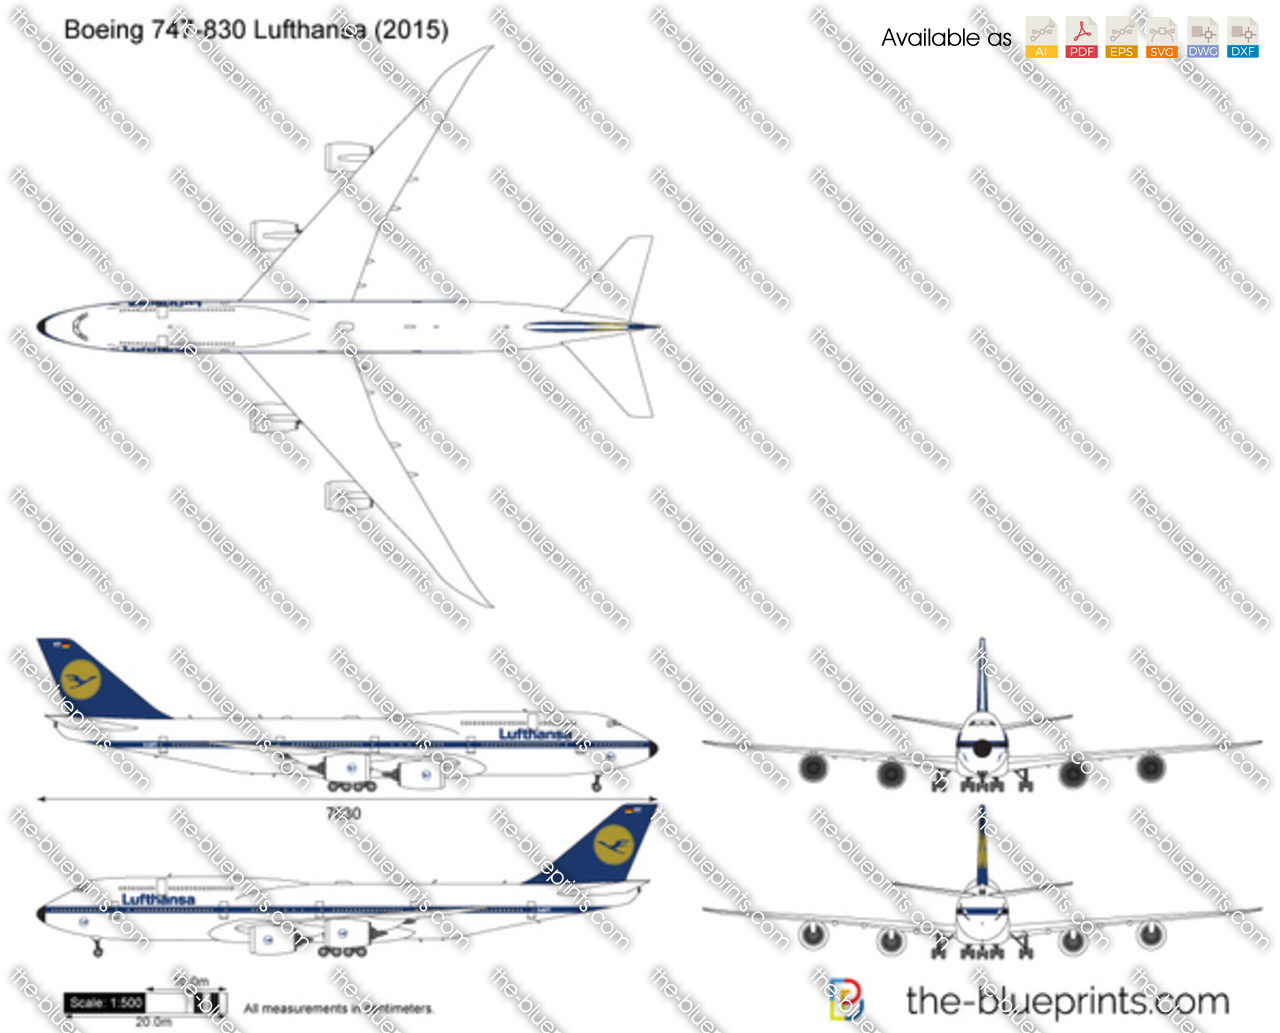 Boeing 747-830 Lufthansa